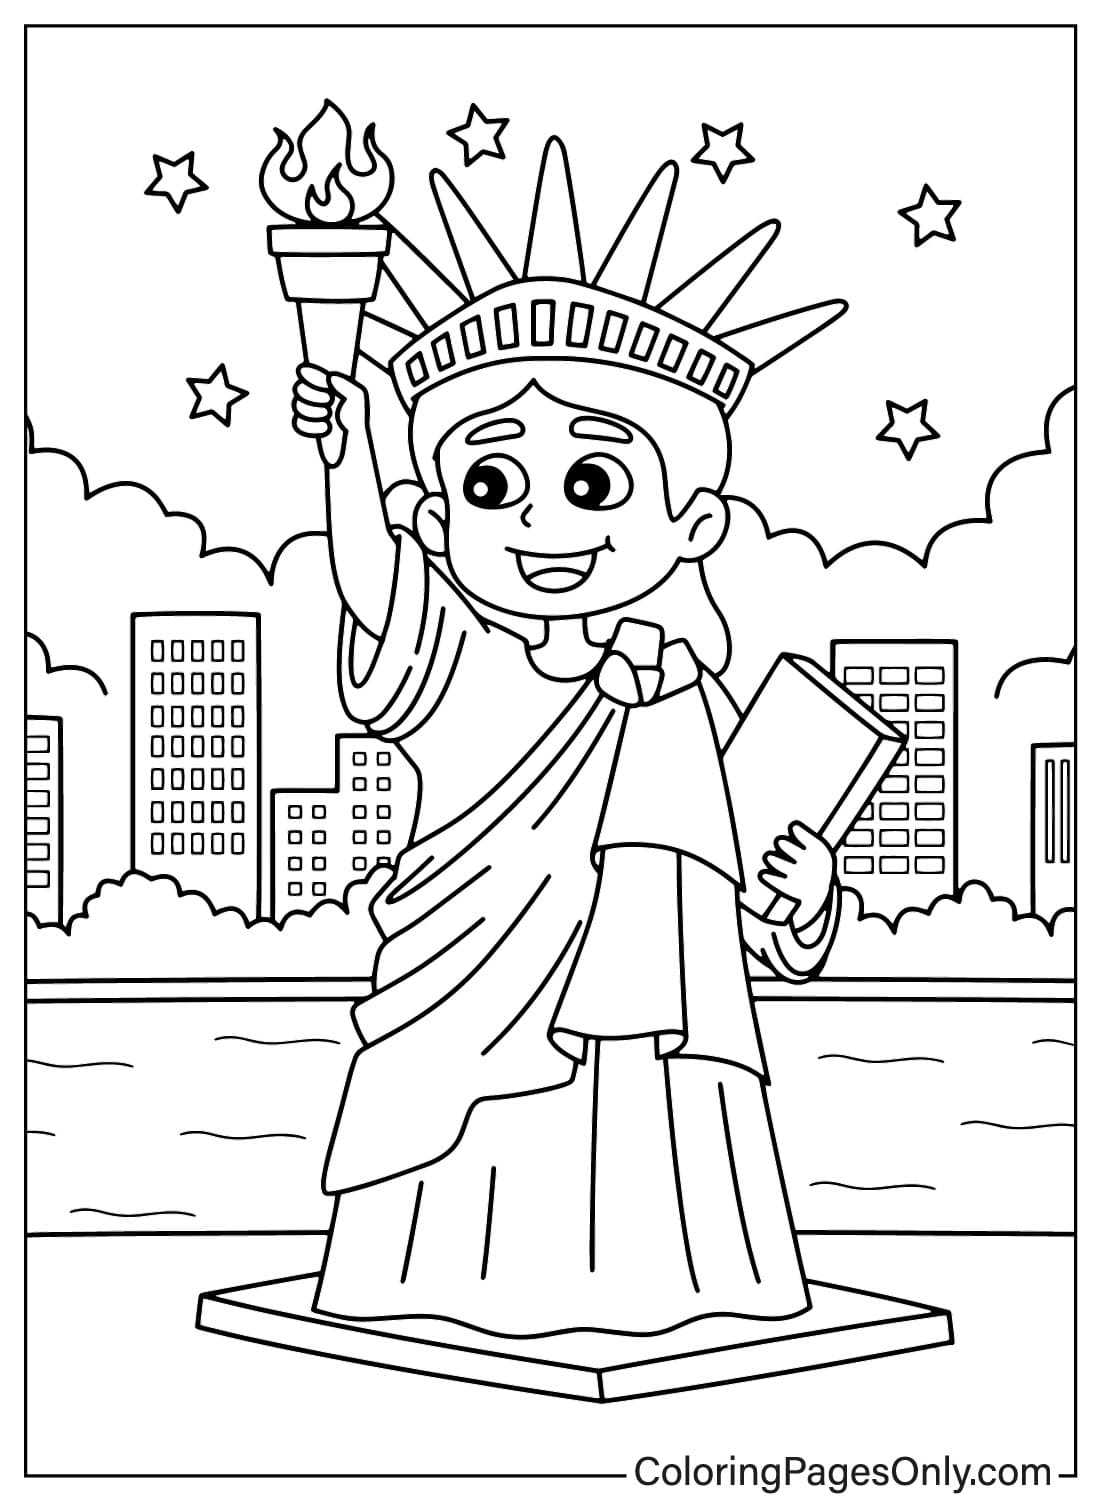 Página Para Colorear De La Estatua De La Libertad Kawaii Para Niños